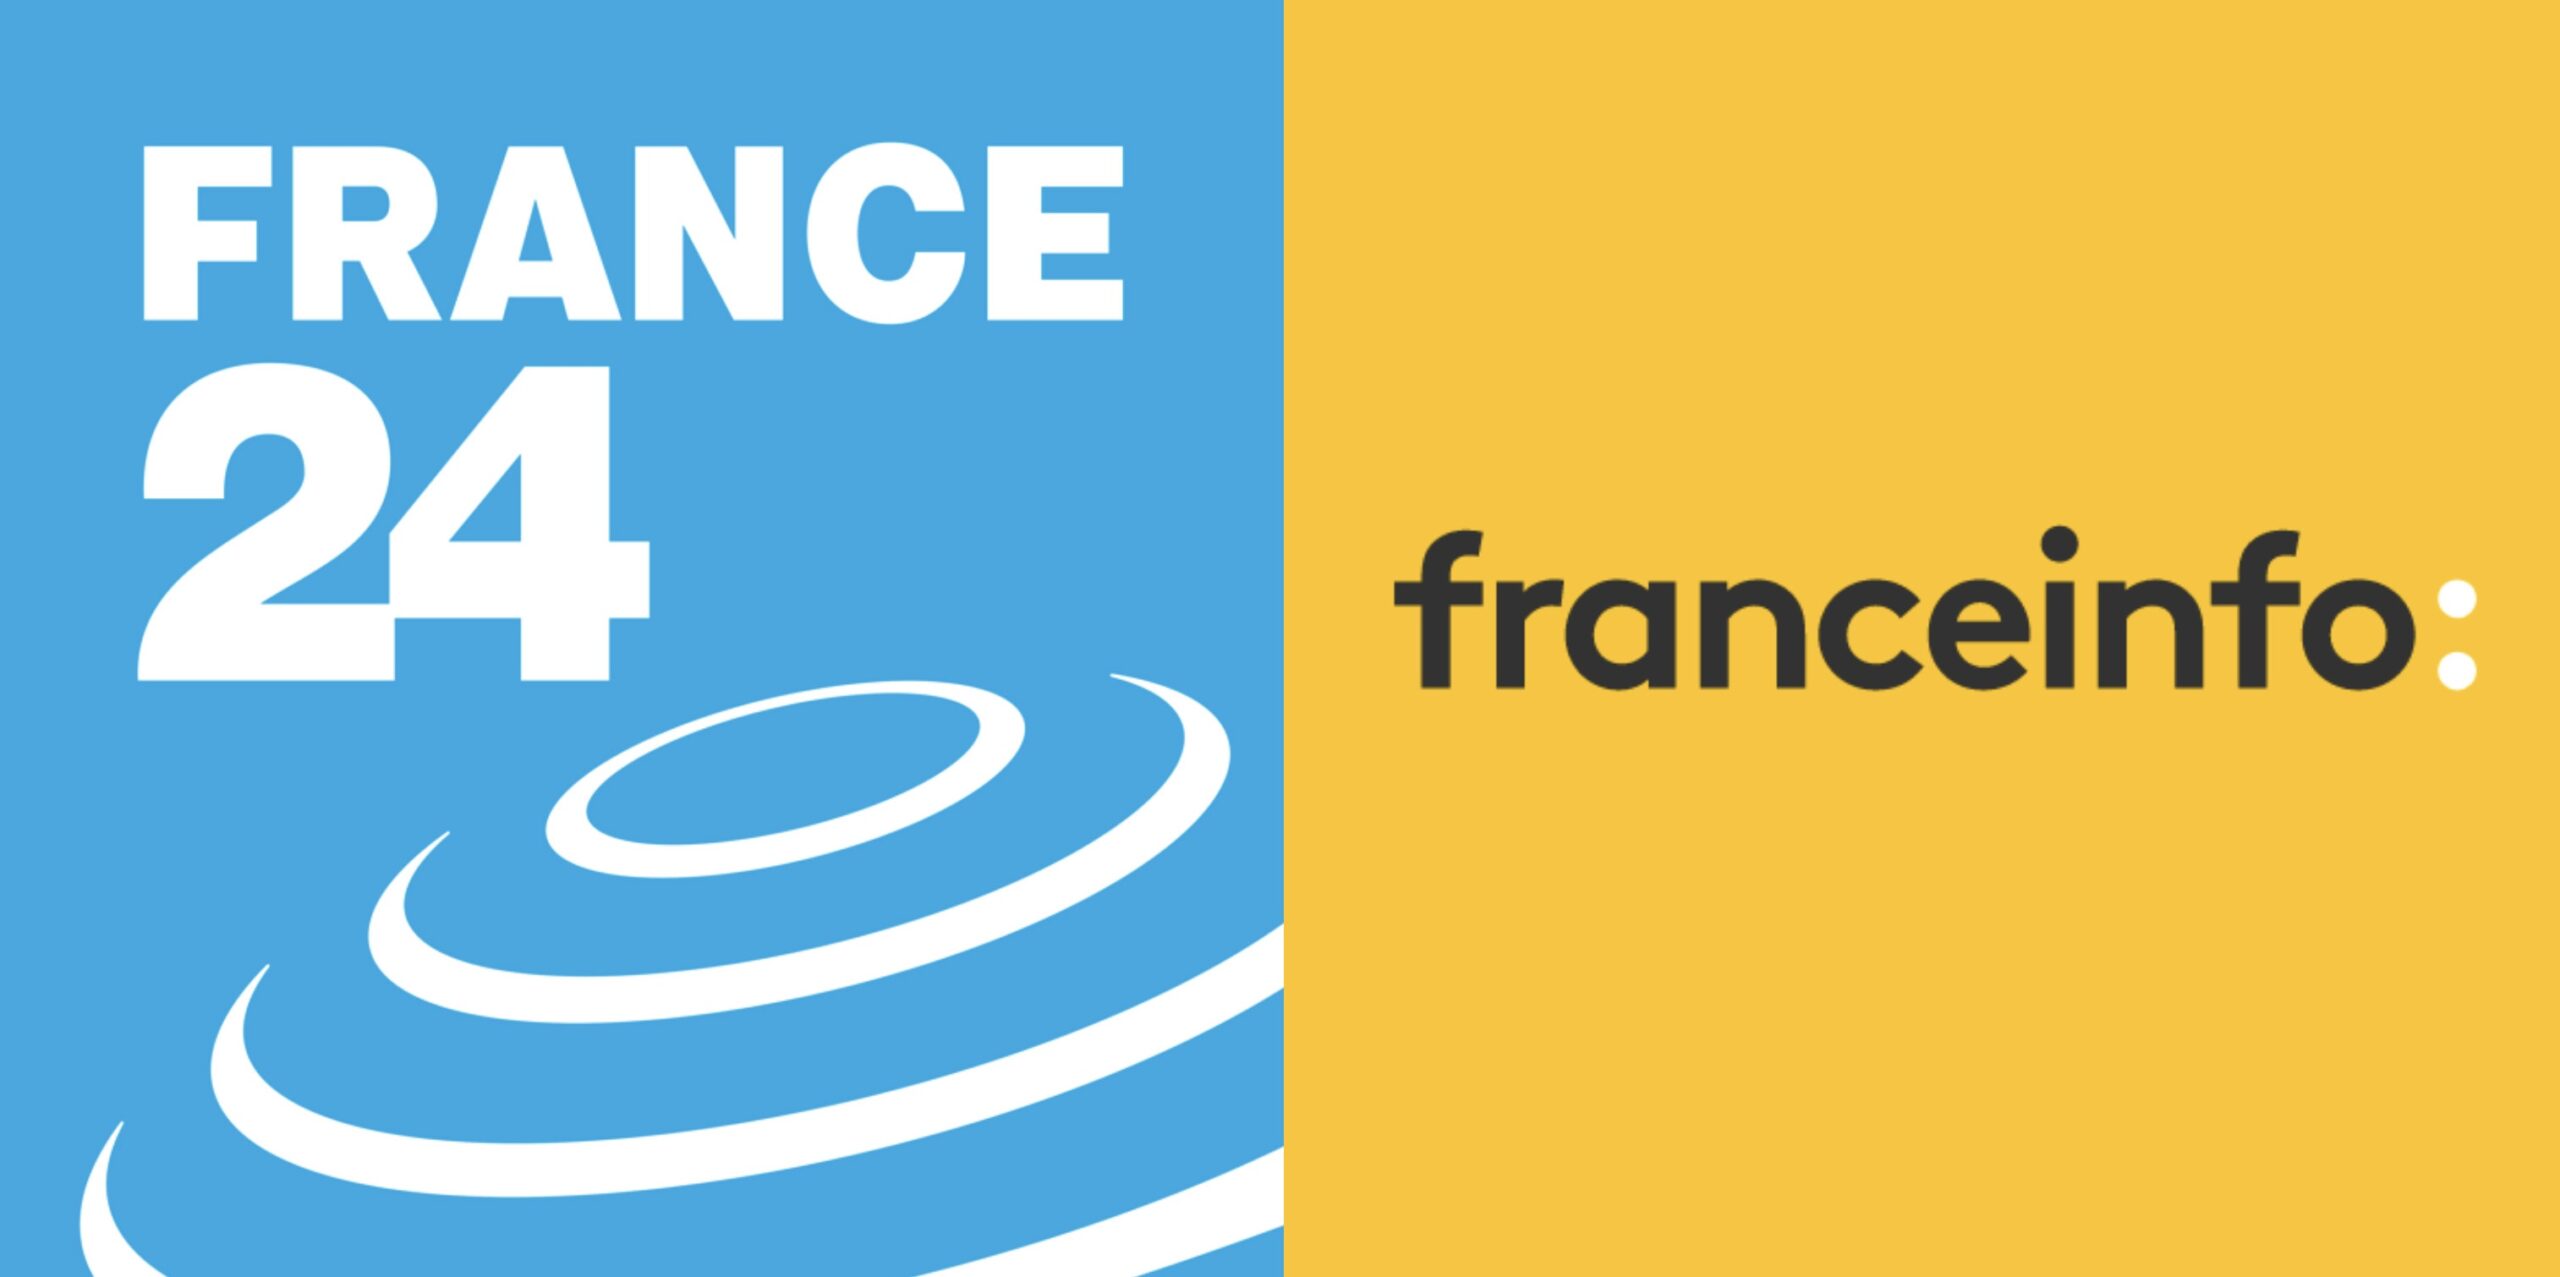 France 24 bientôt remplacée par Franceinfo ?